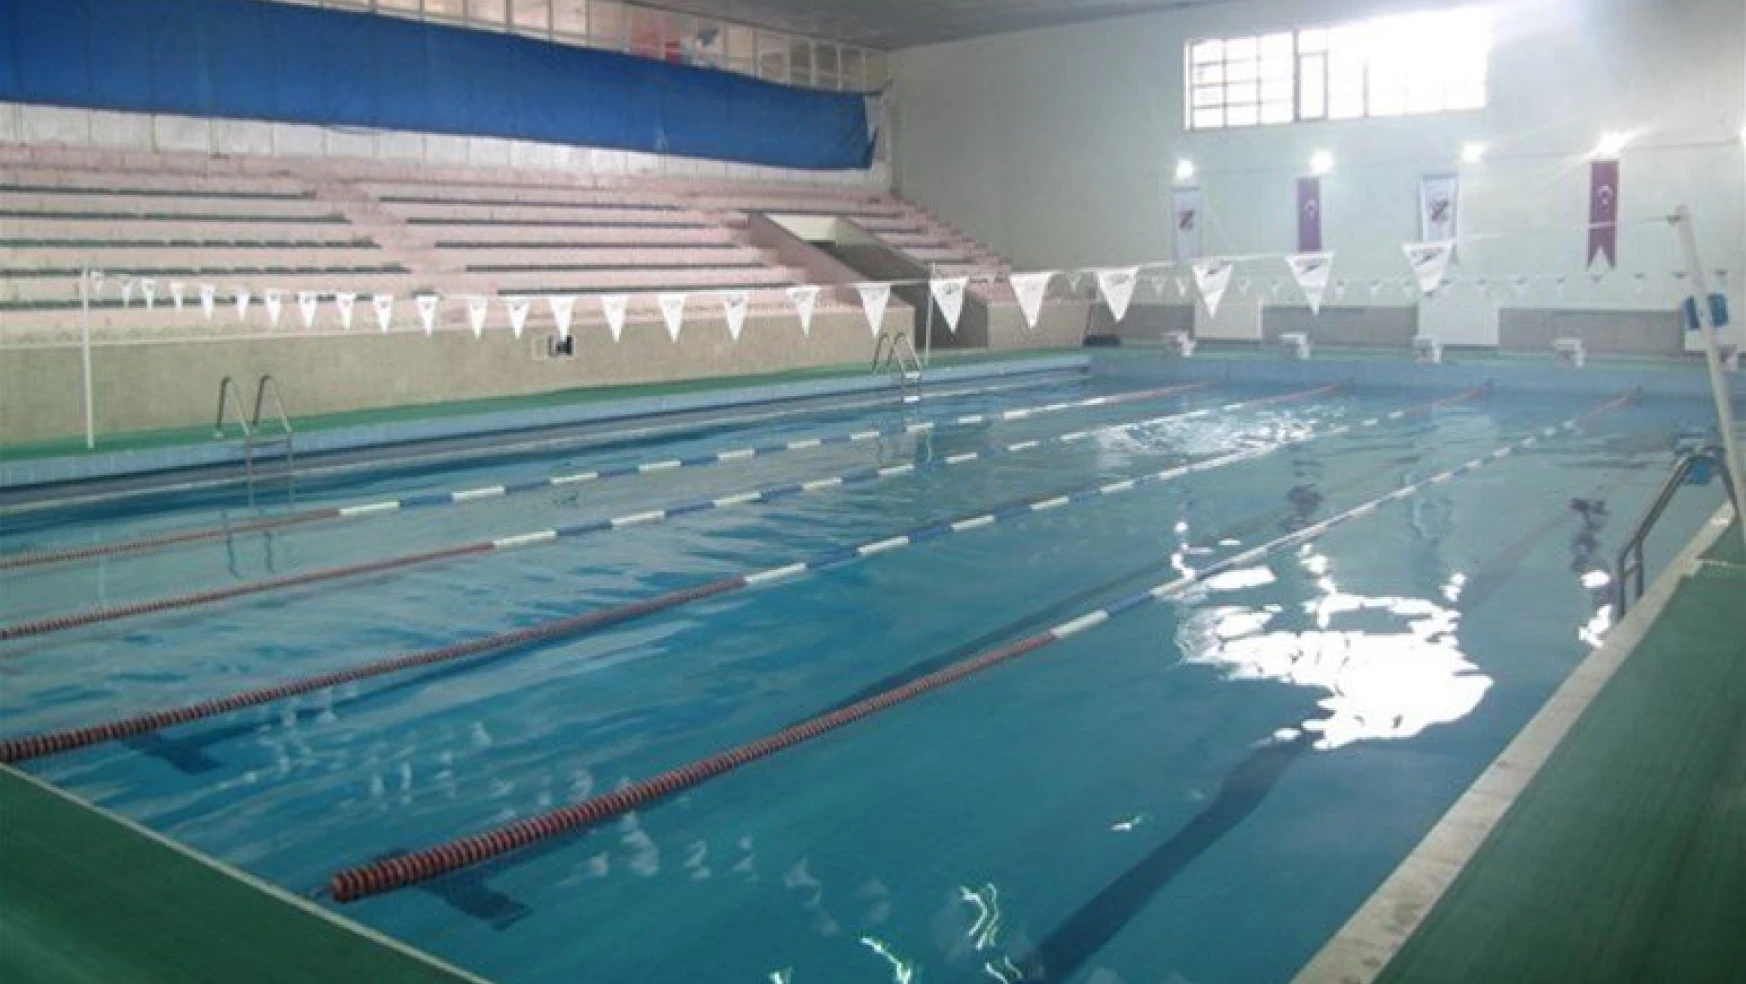 Osman Çağlı Kapalı Yüzme Havuzunda kış sezonu açıldı
